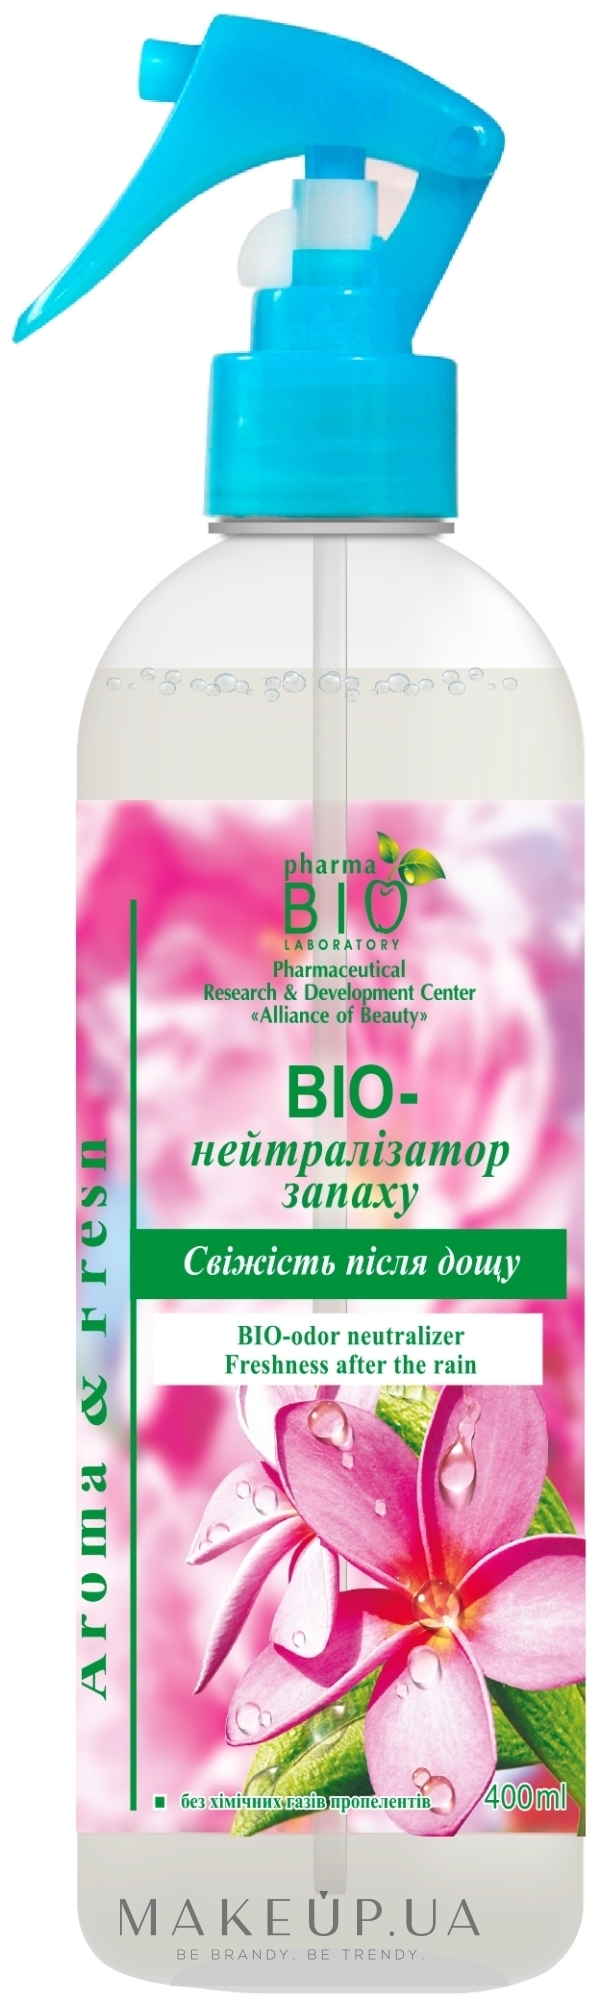 Освіжувач повітря "Біо-нейтралізатор запаху "Свіжість після дощу" - Pharma Bio Laboratory — фото 400ml